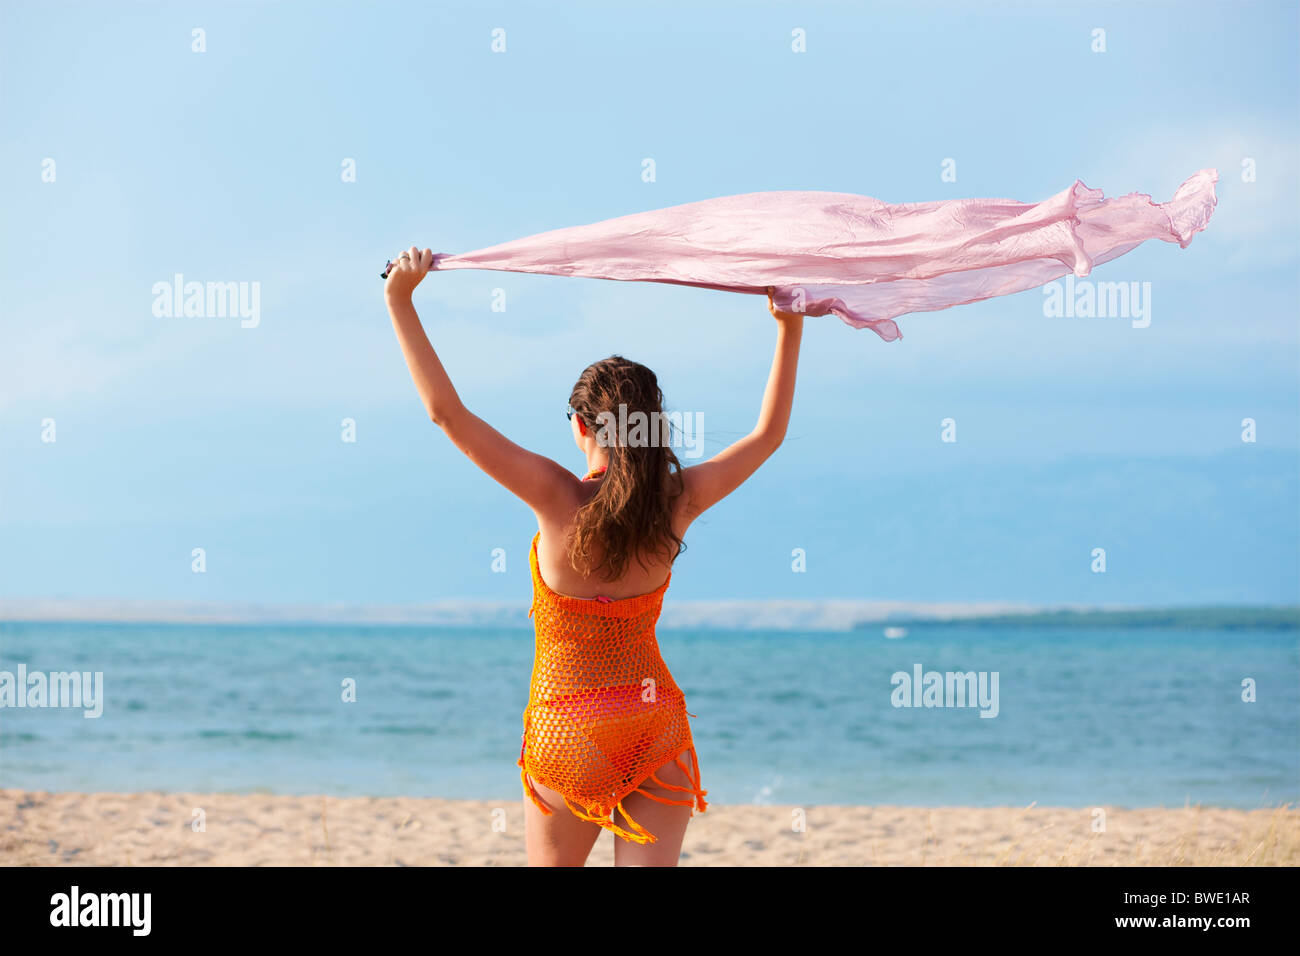 Frau fliegen Tuch am Strand Stockfoto